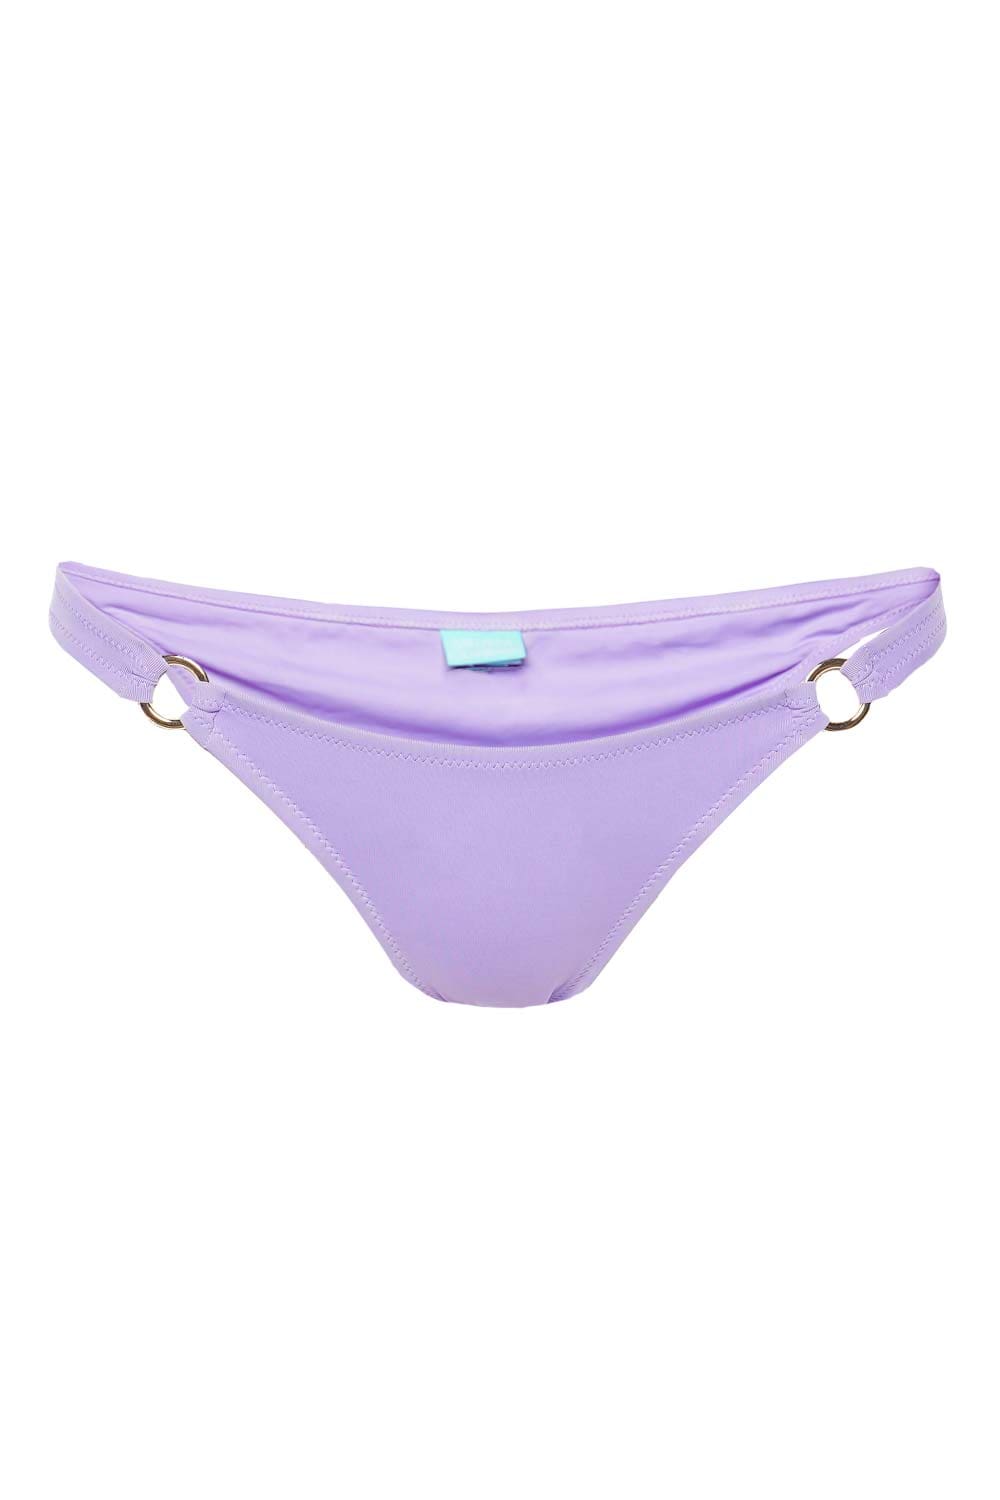 Melissa Odabash Greece Lavender Bikini Bottom